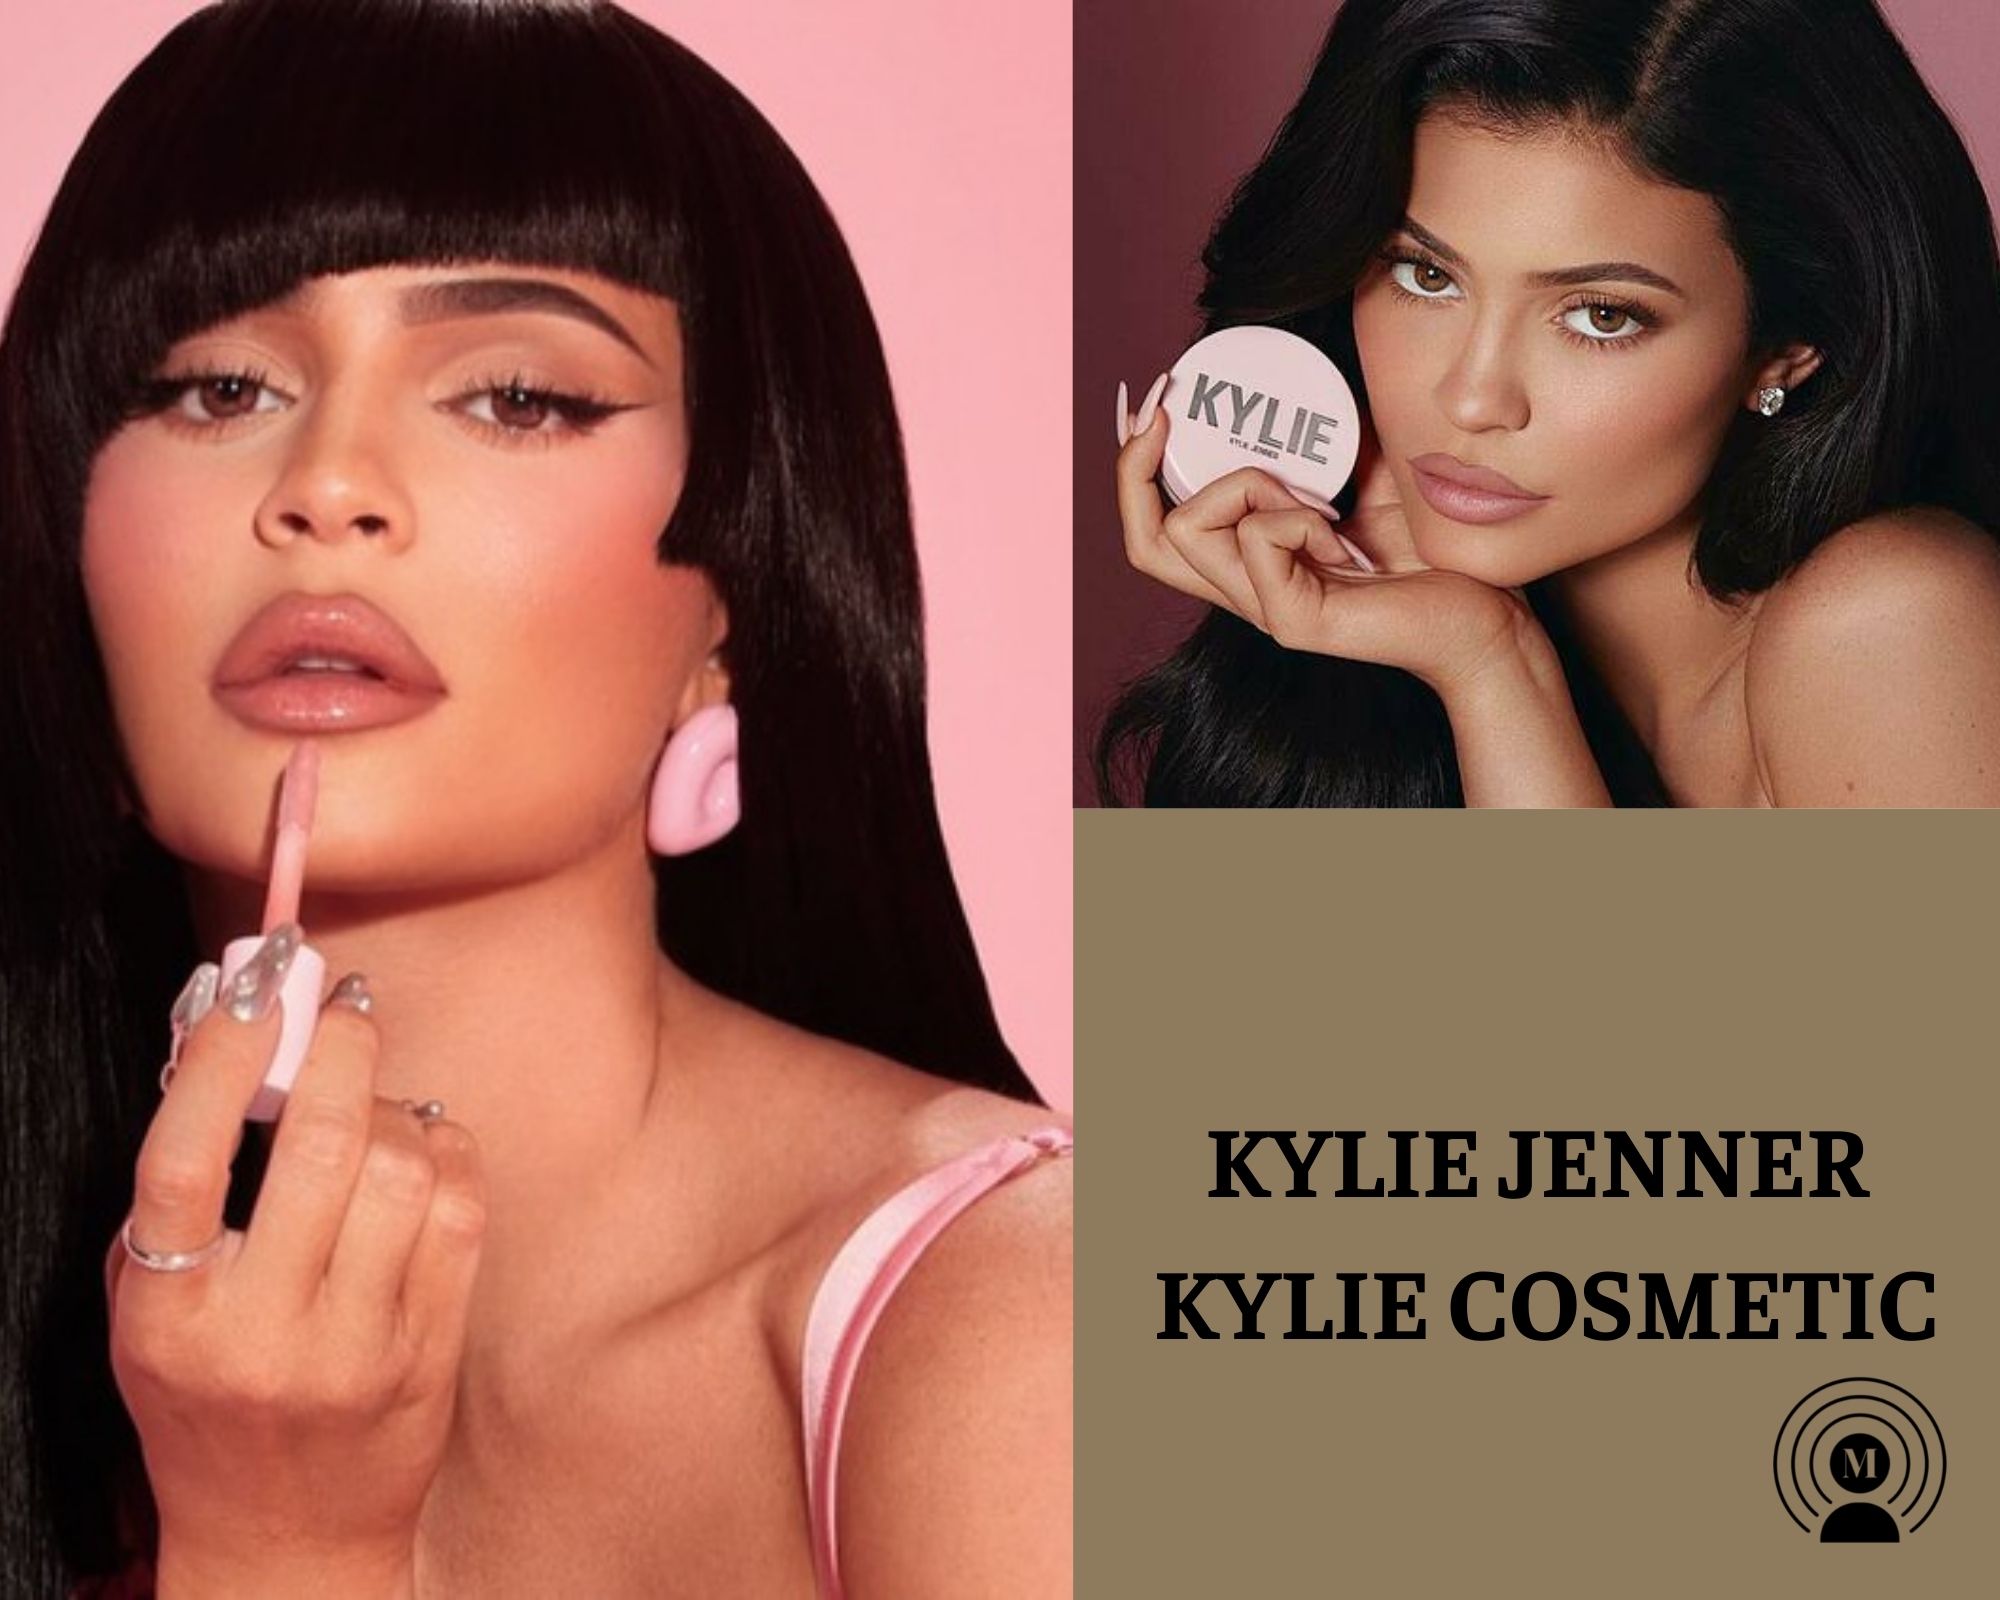 Mặc dù còn vấp phải những ý kiến trái chiều về chất lượng sản phẩm, thế nhưng Kylie Jenner đã 1 ...